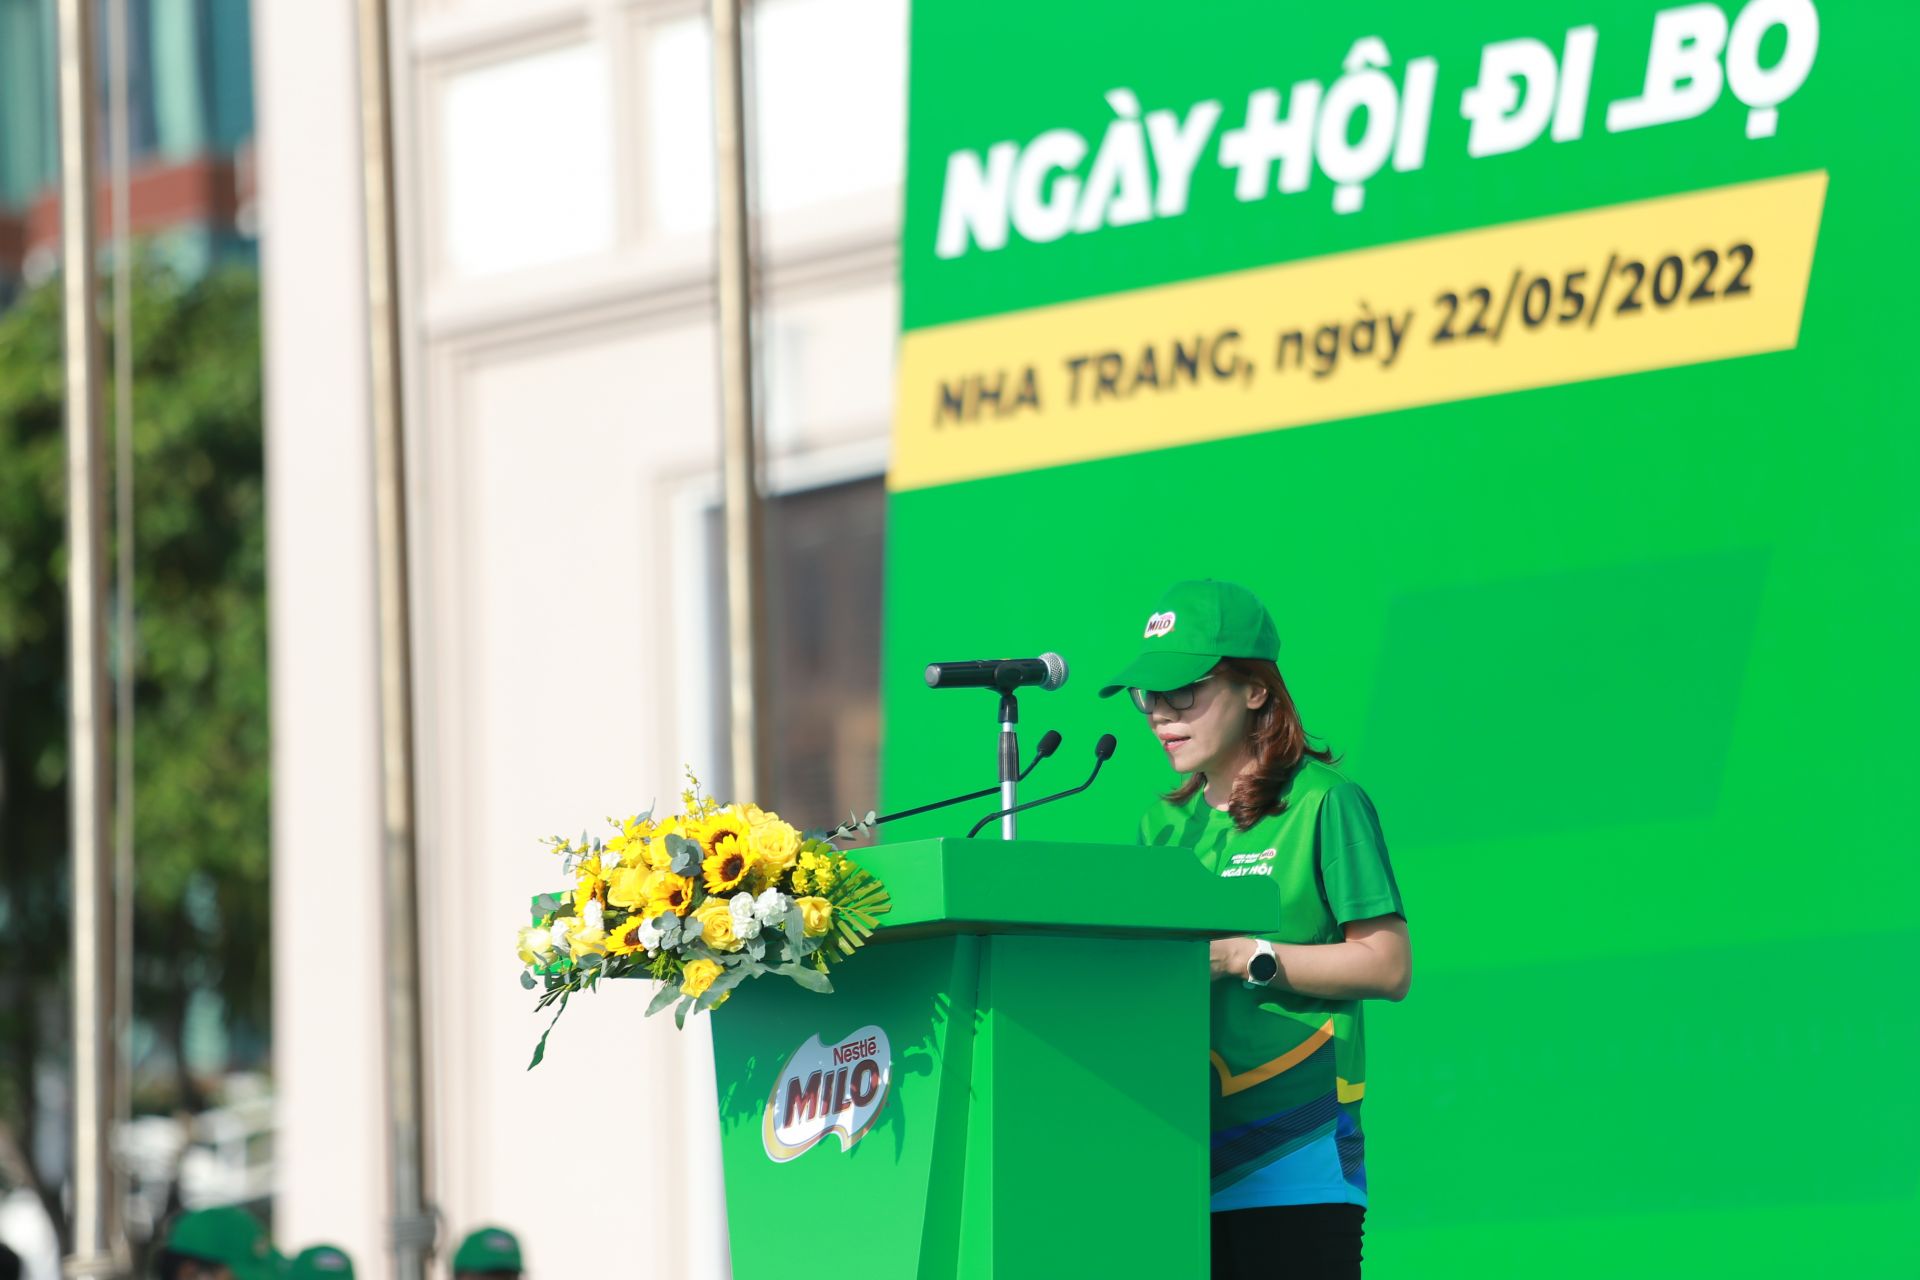 bà Nguyễn Minh Nguyệt, Giám đốc ngành hàng MILO và Sữa tại công ty Nestlé Việt Nam phát biểu tại sự kiện.